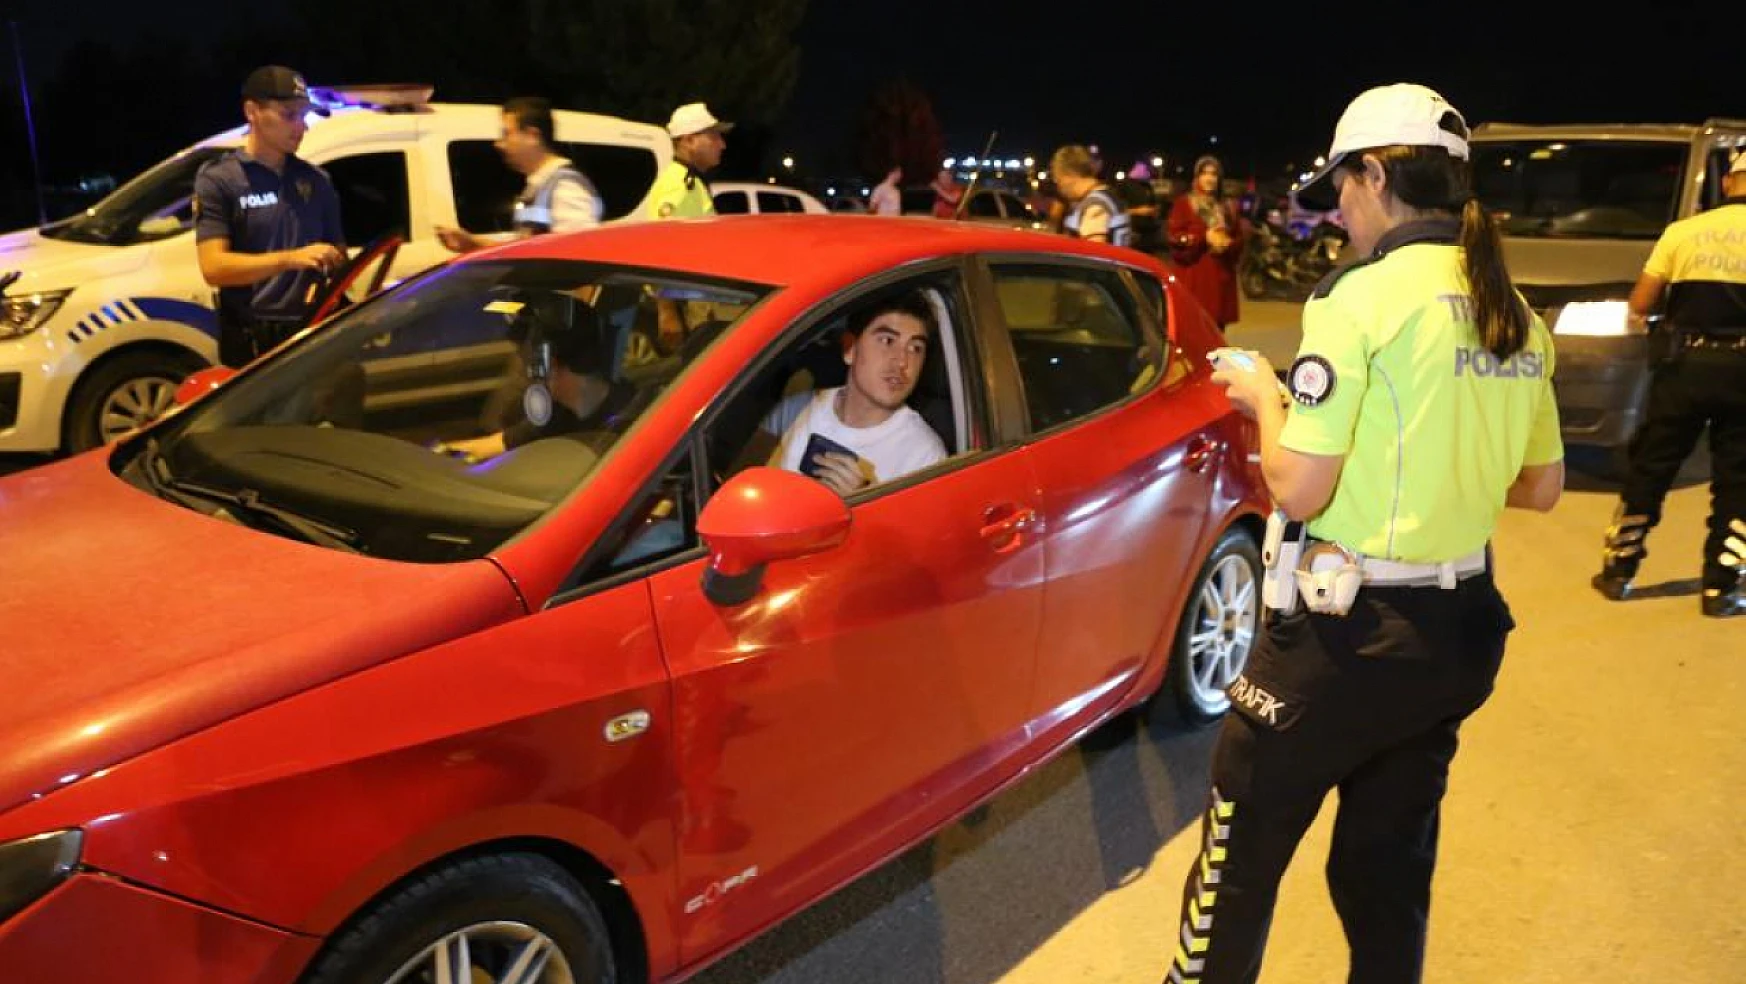 Konya'da polisi karşılarında görenler şaşırdı